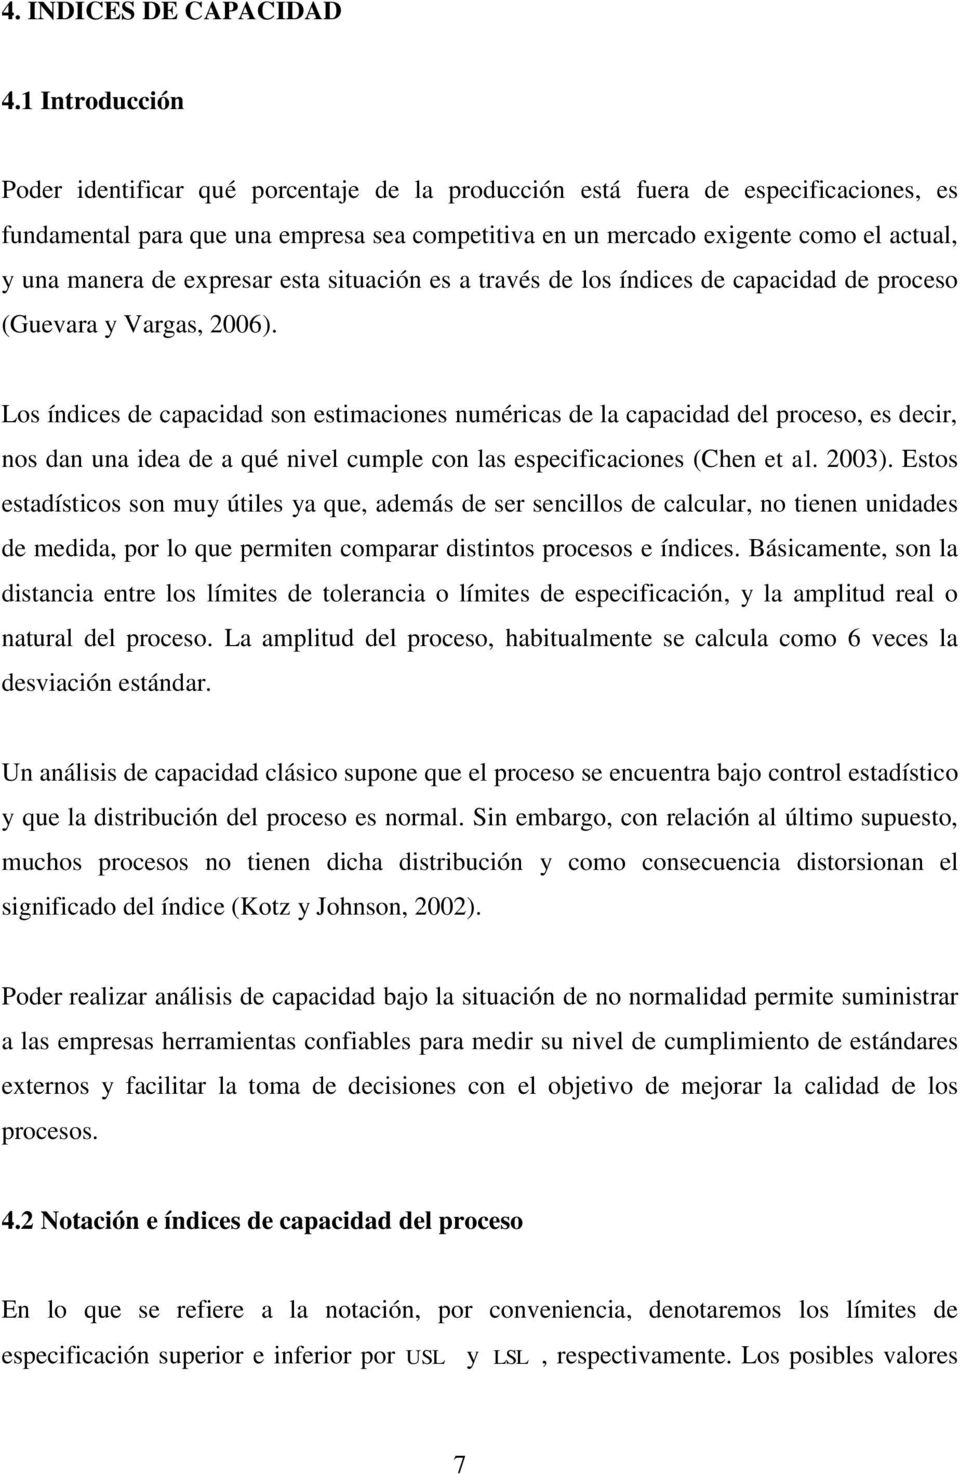 manera de expresar esta situación es a través de los índices de capacidad de proceso (Guevara y Vargas, 2006).